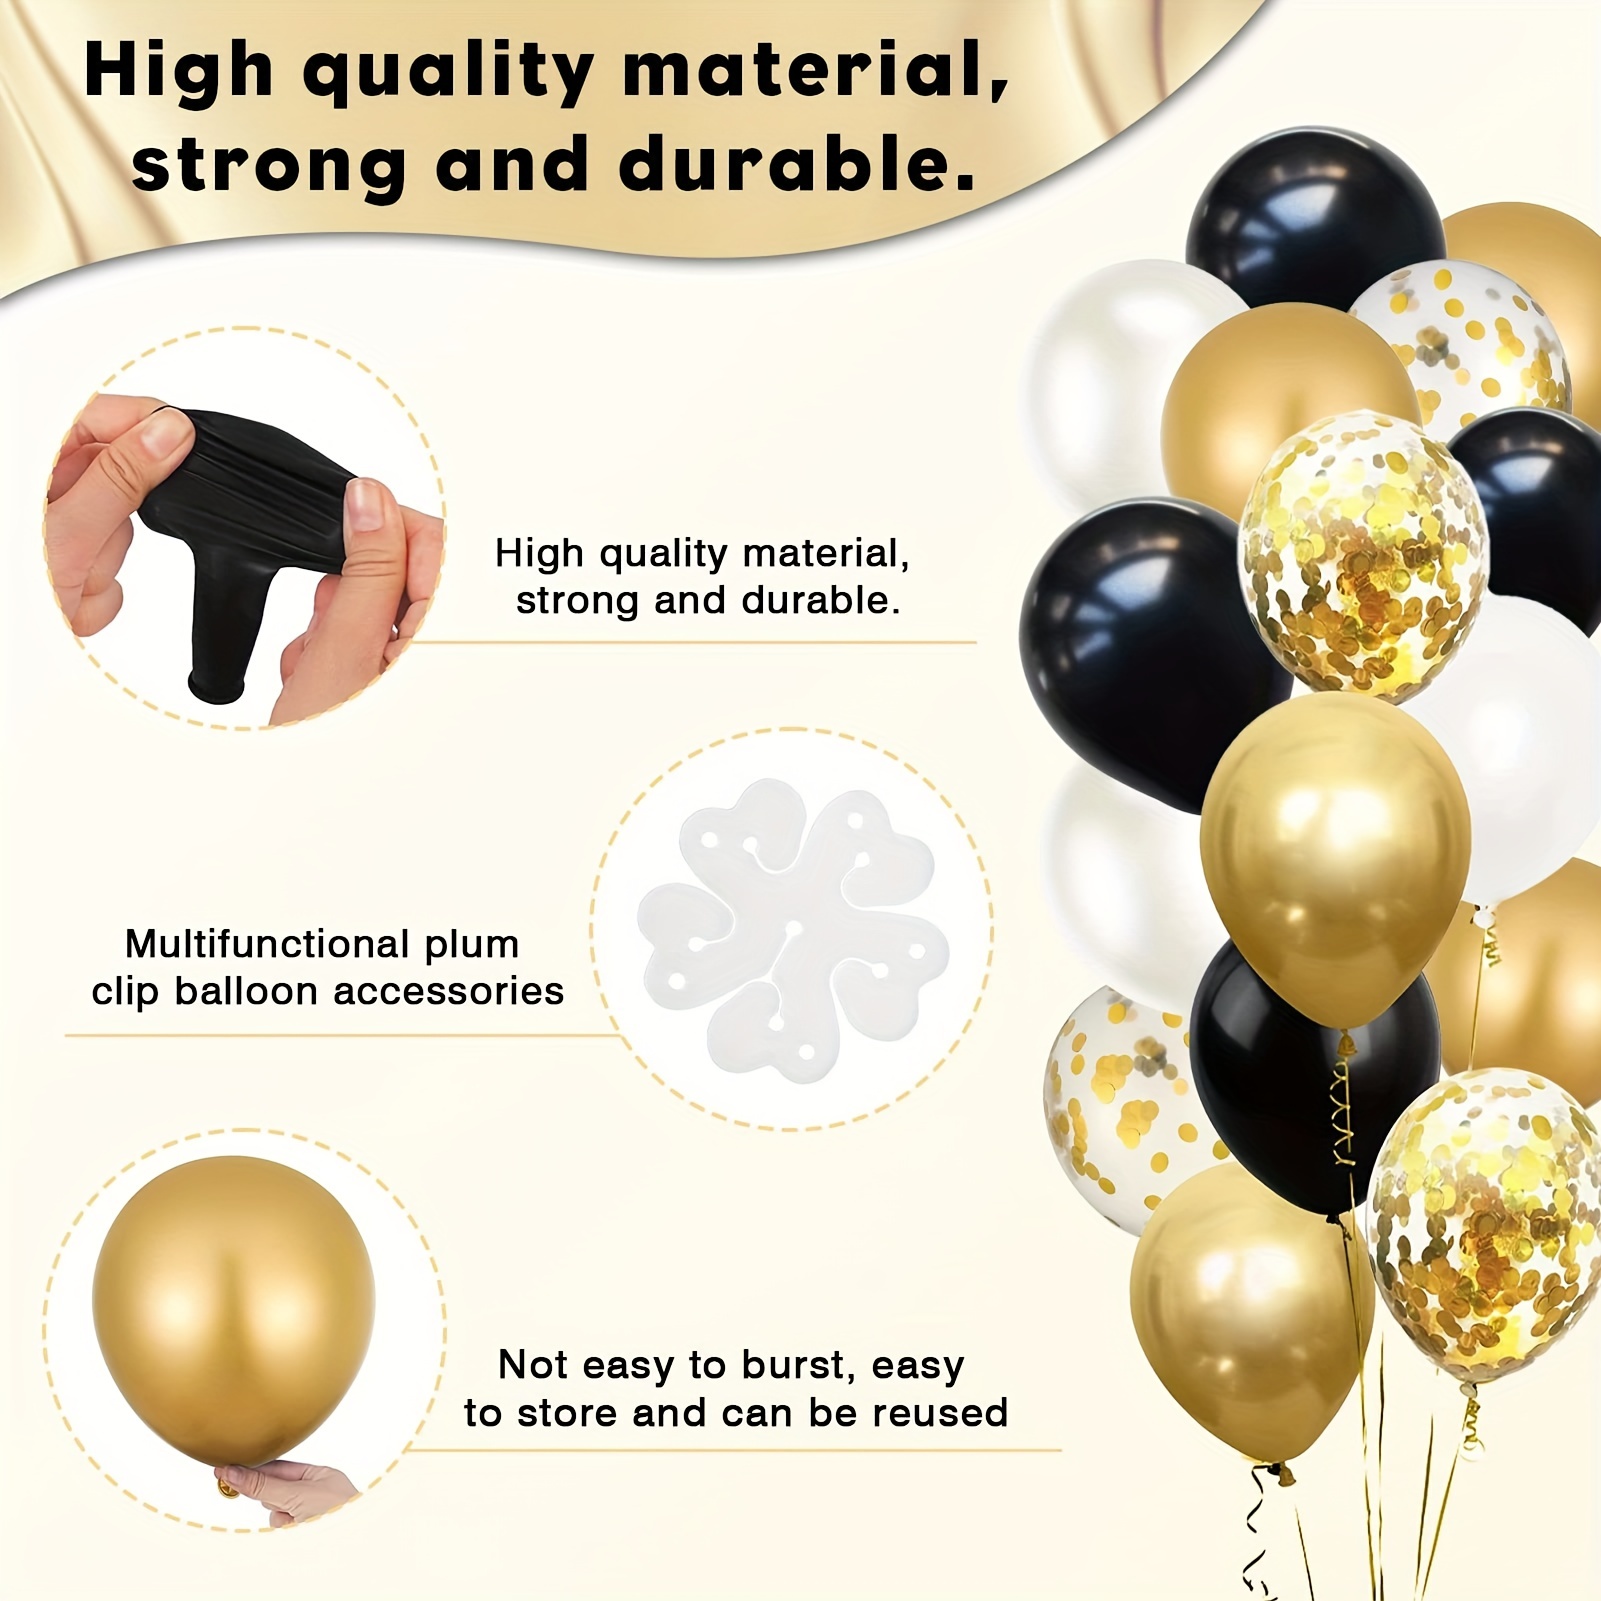 Globos de látex de confeti de color negro y dorado, 50 globos dorados  metálicos y negros de 12 pulgadas para cumpleaños, graduación, boda